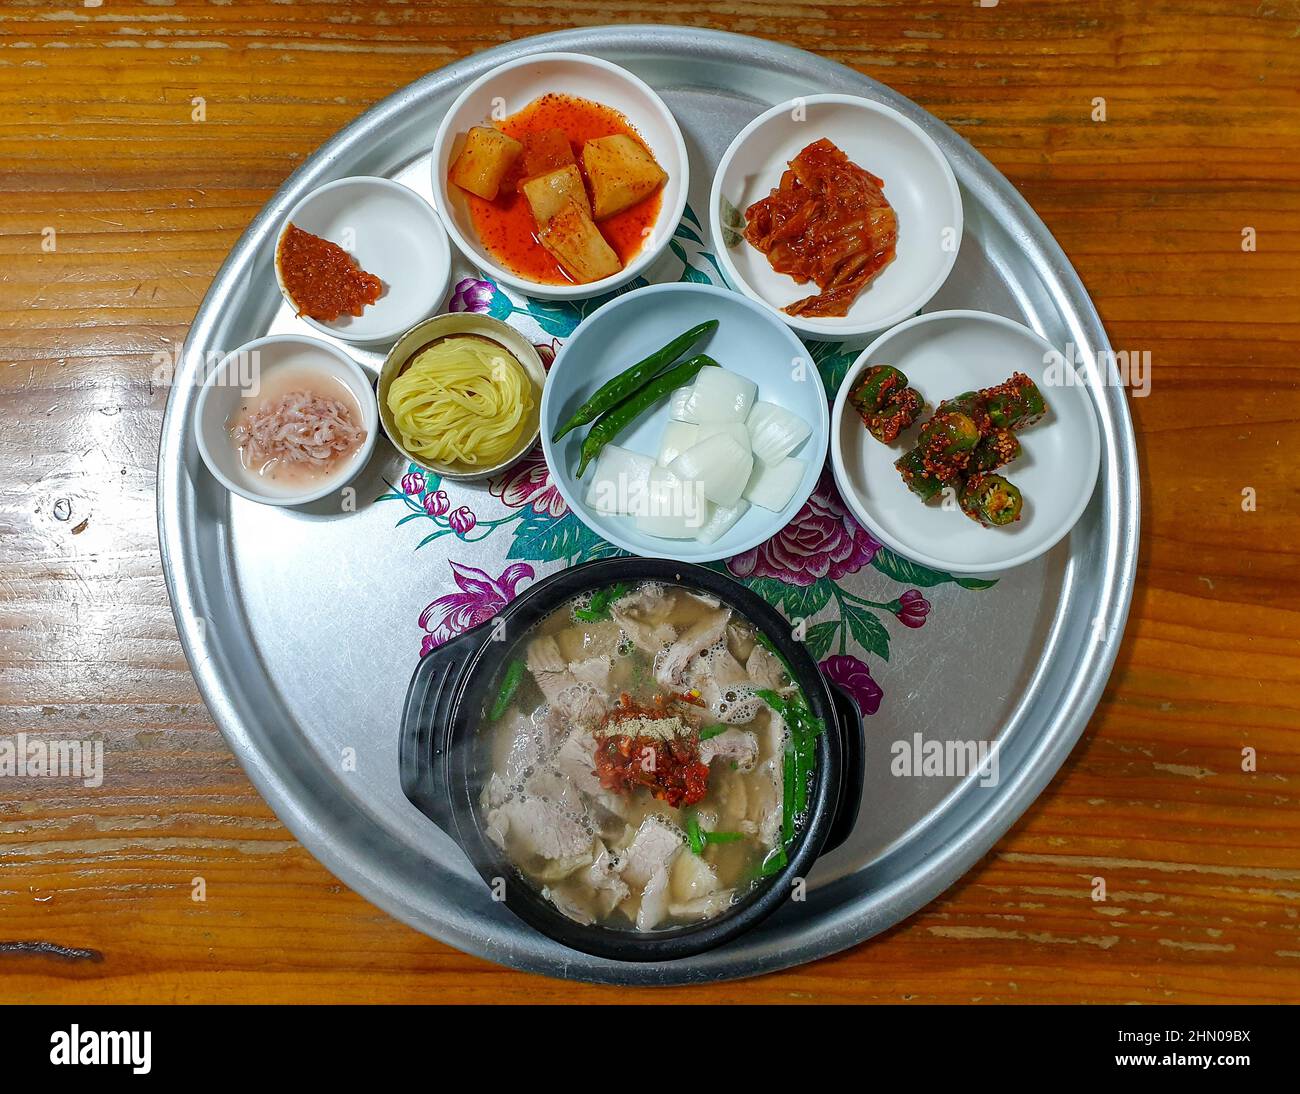 Dwaeji-gukbap, une soupe populaire sud-coréenne faite avec du porc, de la sauce soja, du vin de riz, de l'huile de sésame et du bouillon d'os. Servi avec une variété de plats d'accompagnement. Banque D'Images